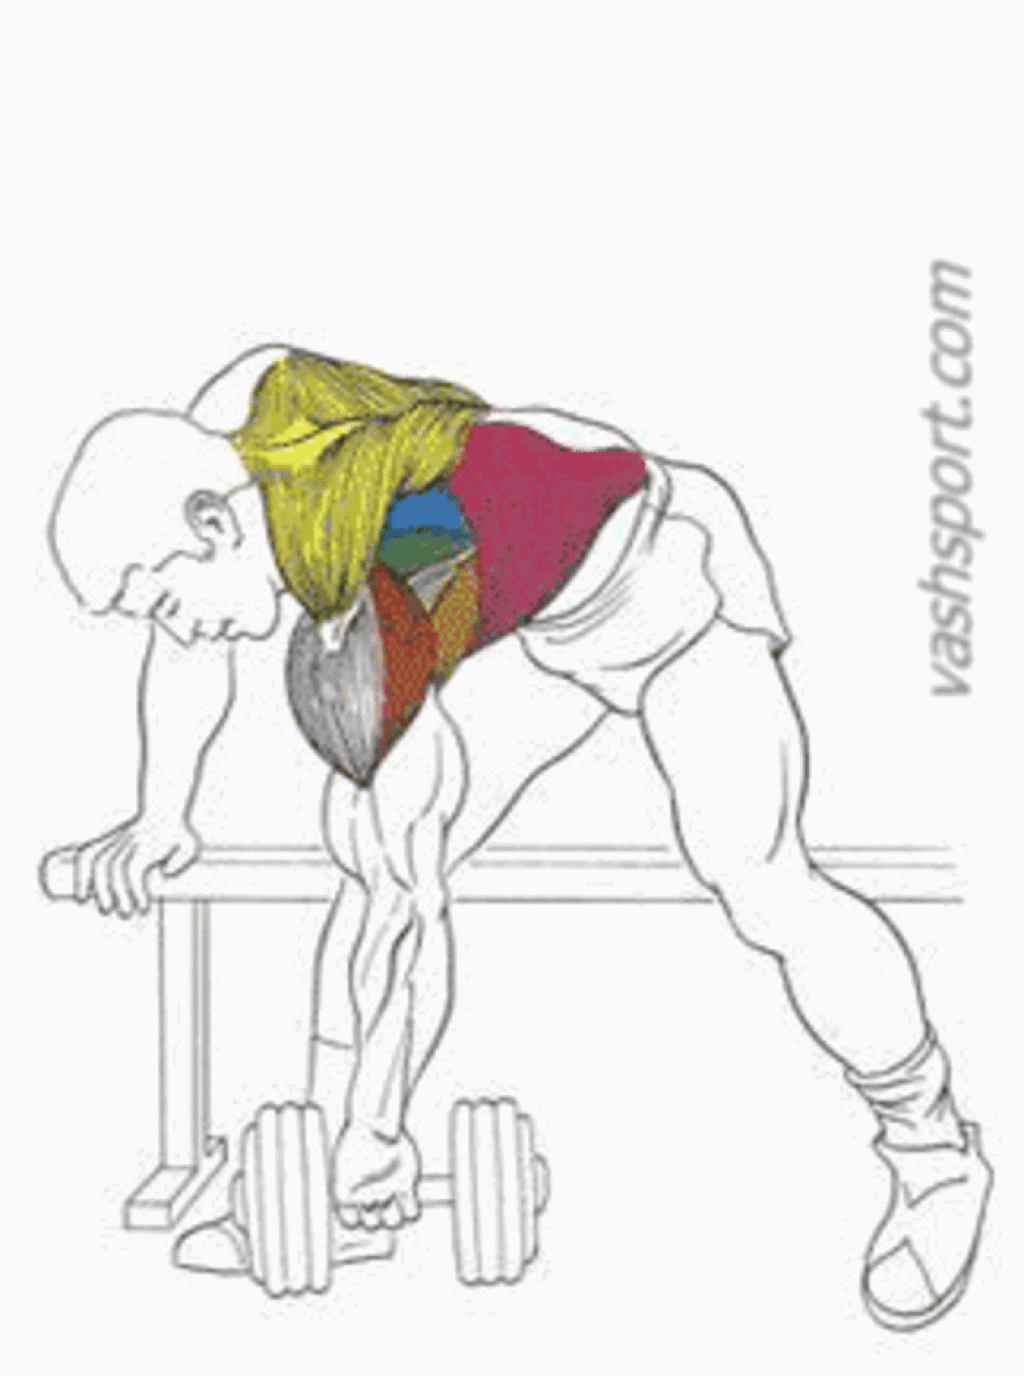 Быстрый рост мышц: как накачать широкую спину?